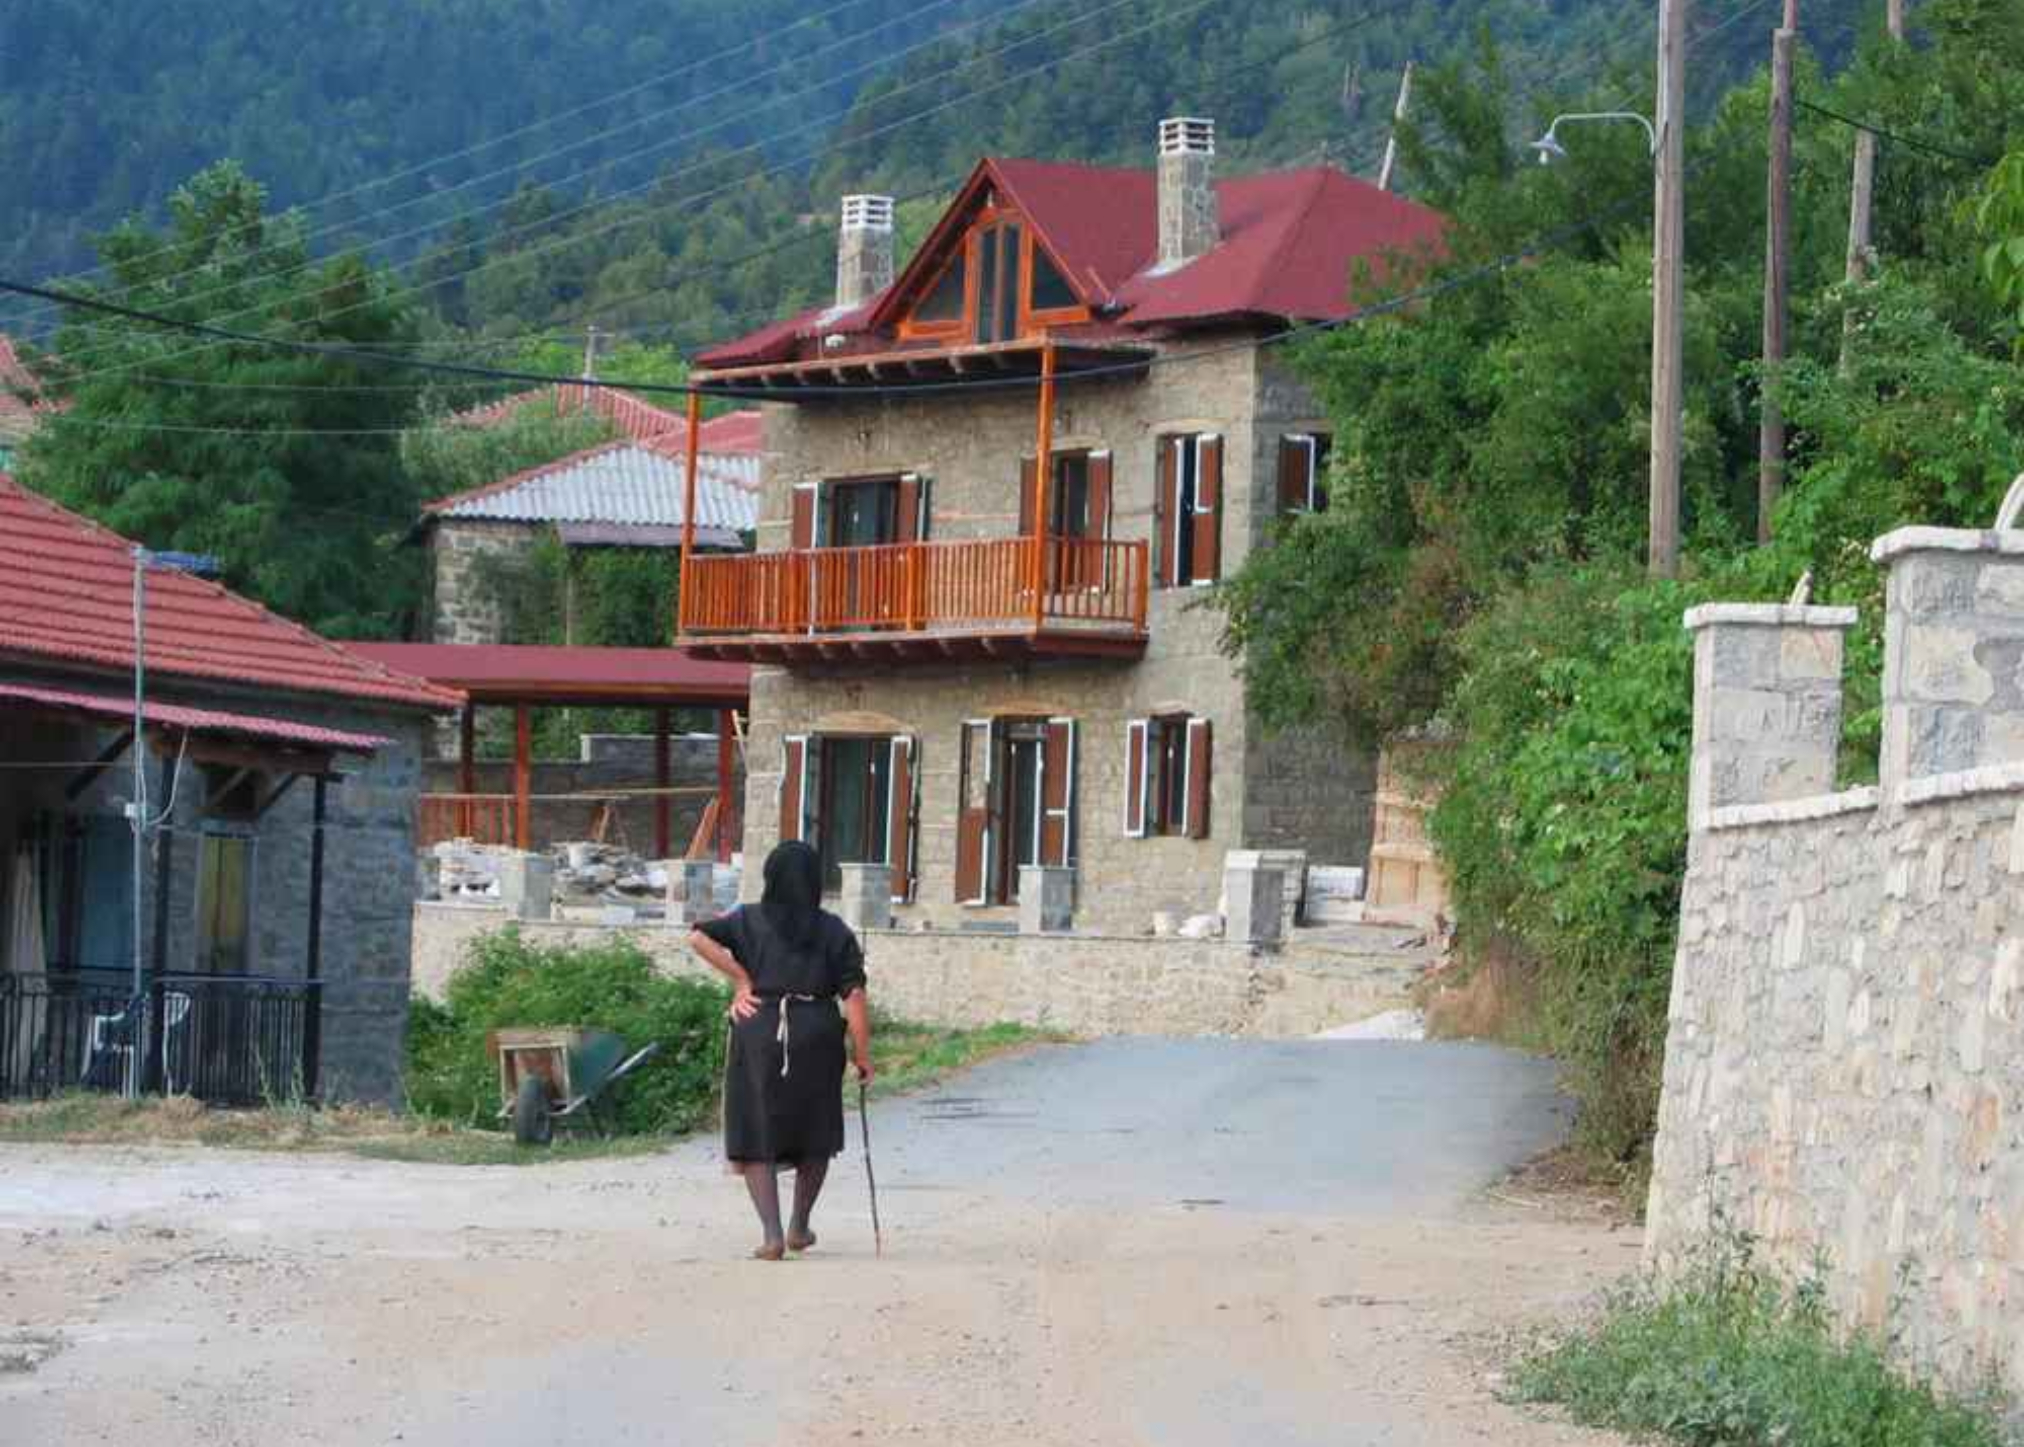 Απόδραση στην Ορεινή Ναυπακτία: Τρία χωριά που θα σε μαγέψουν